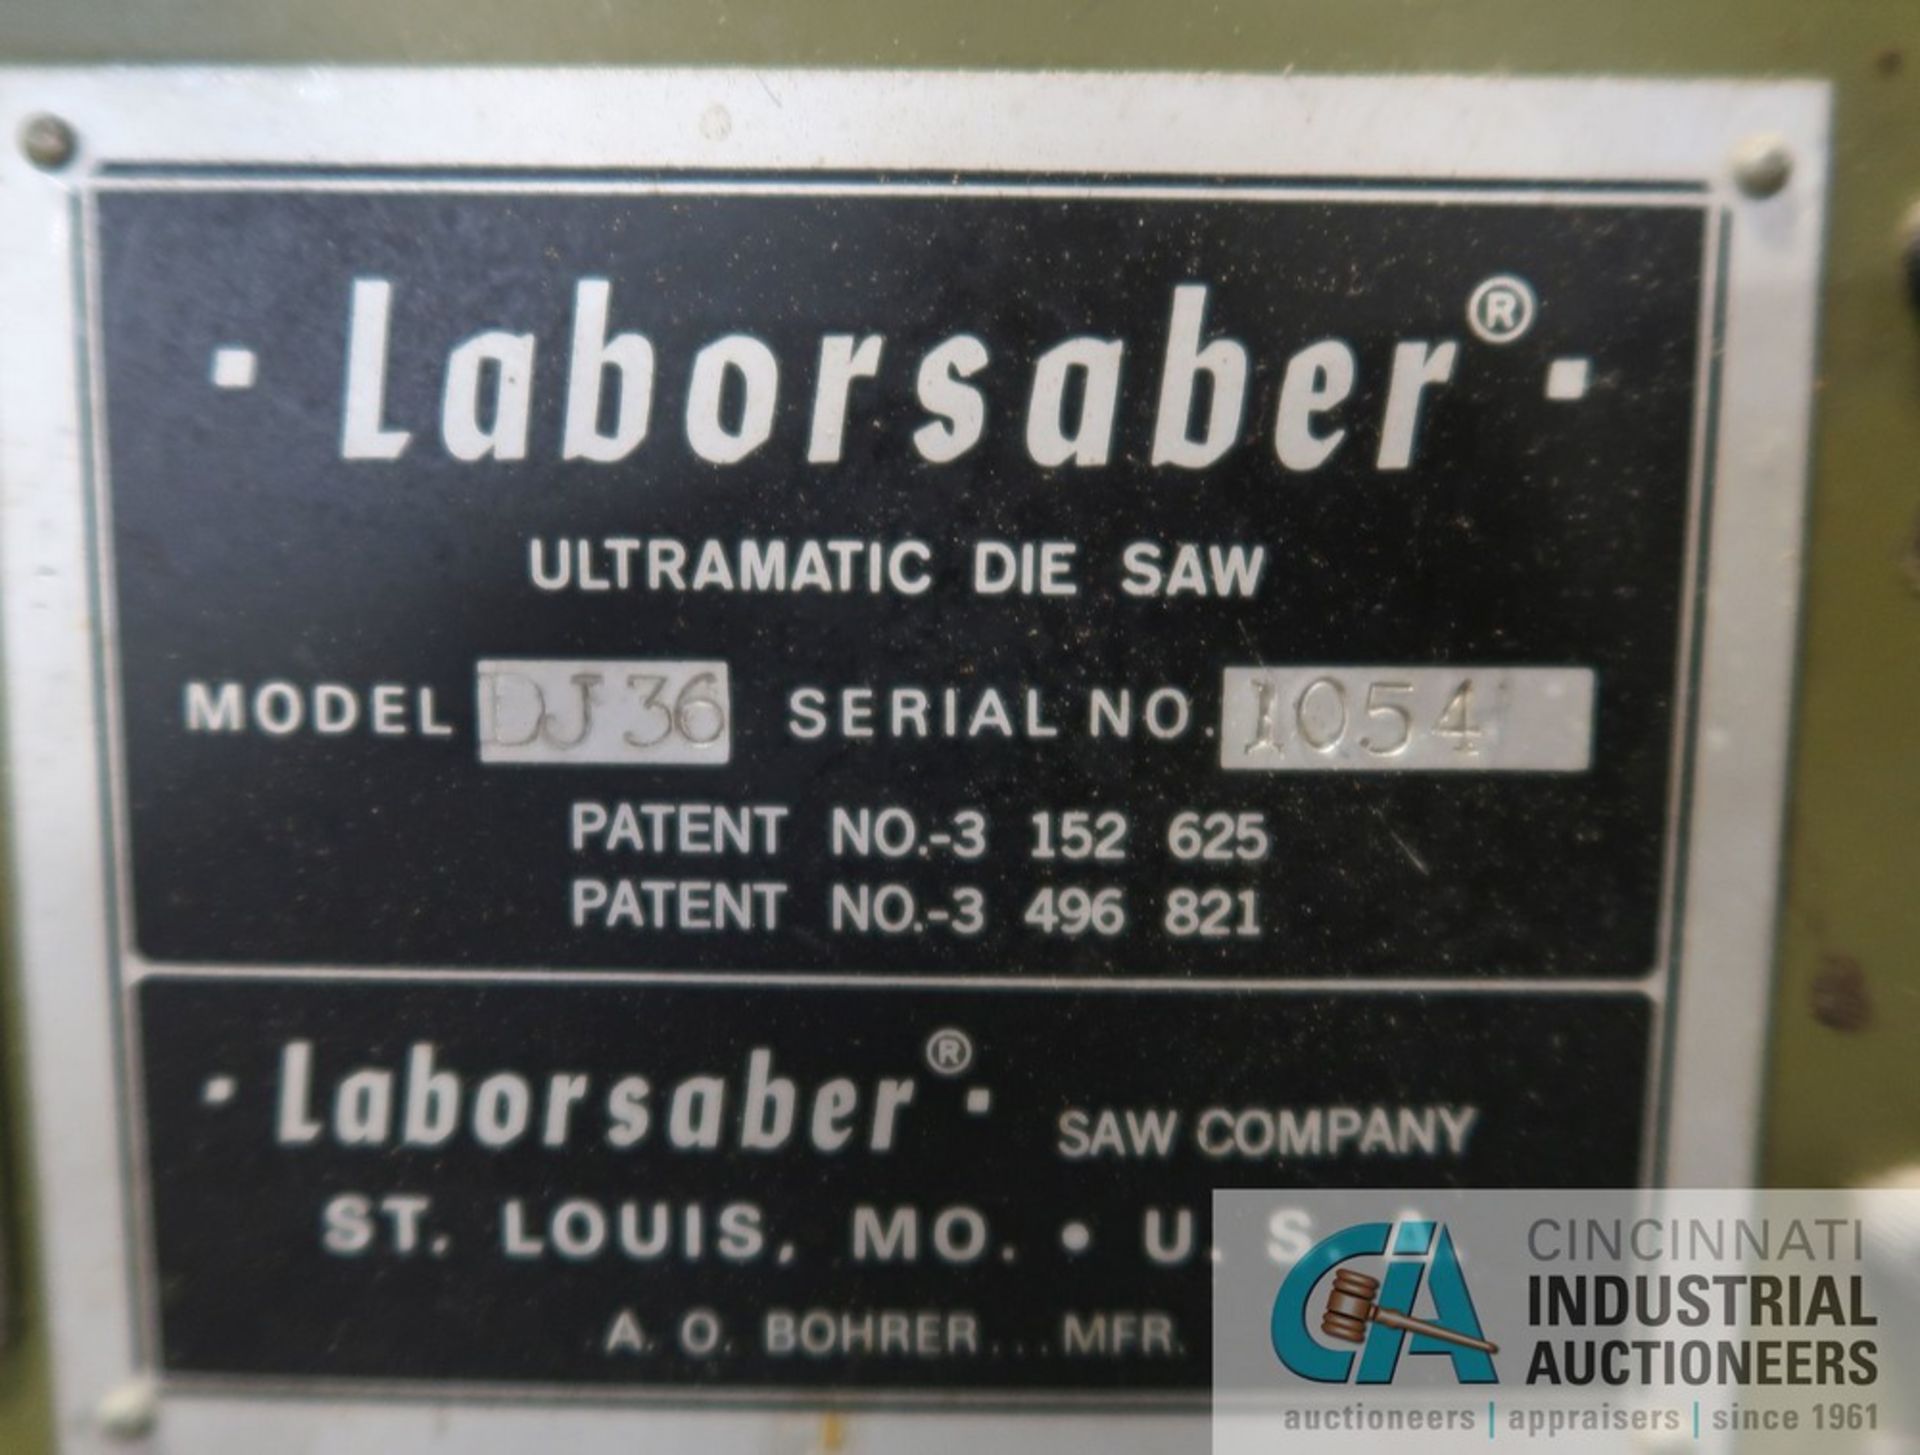 LABORSABER MODEL DJ36 ULTRAMATIC DIE SAW; S/N 1054 - Image 6 of 6